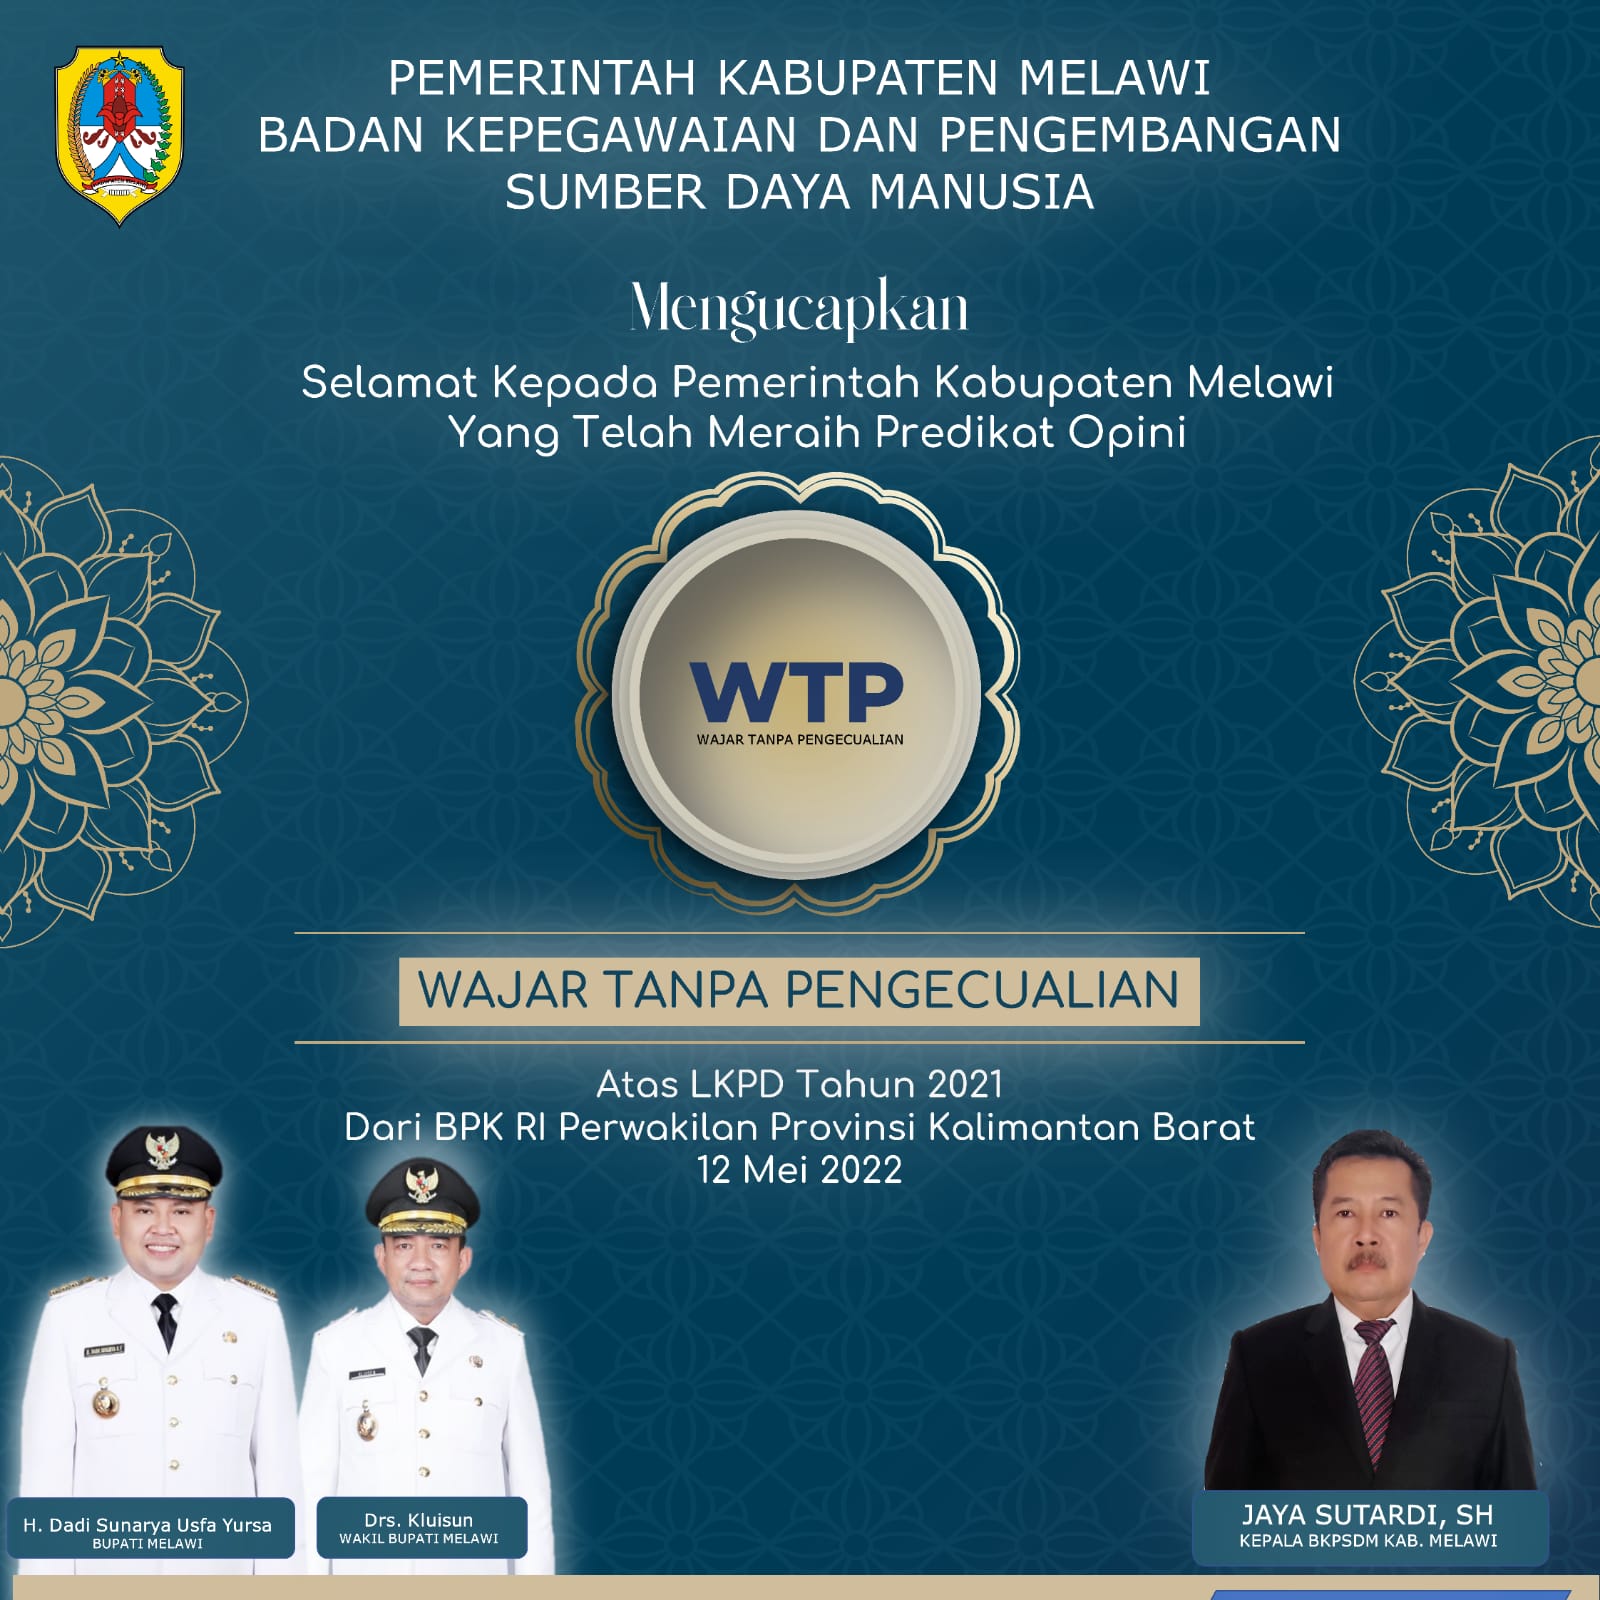 Selamat dan sukses atas pencapaian pemerintah Kabupaten melawi dalam mempertahankan Opini WTP terhadap LKPD tahun 2021